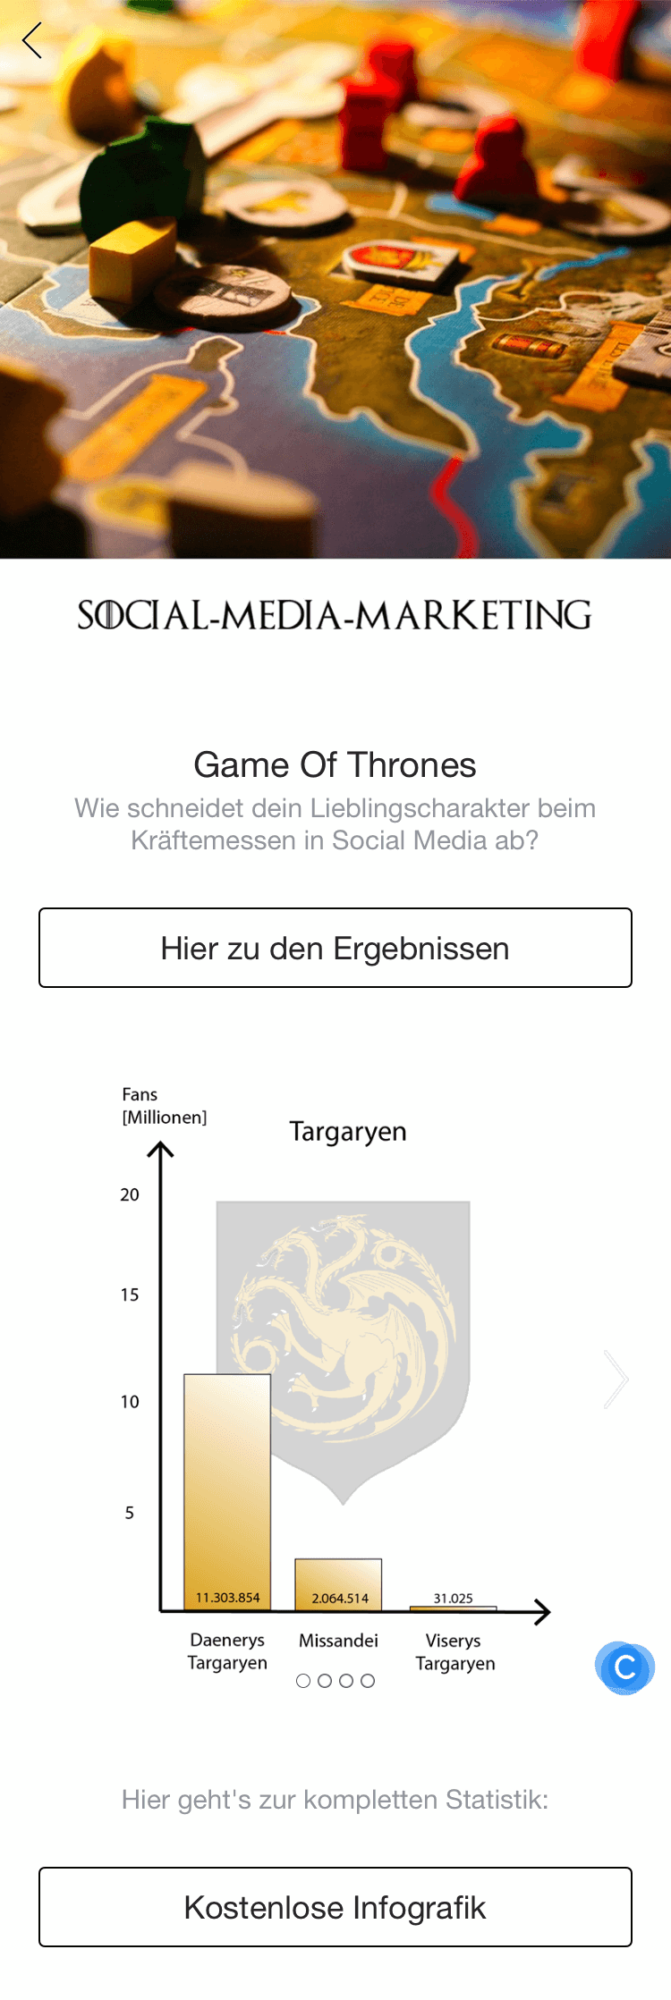 Facebook Canvas zu Game of Thrones^